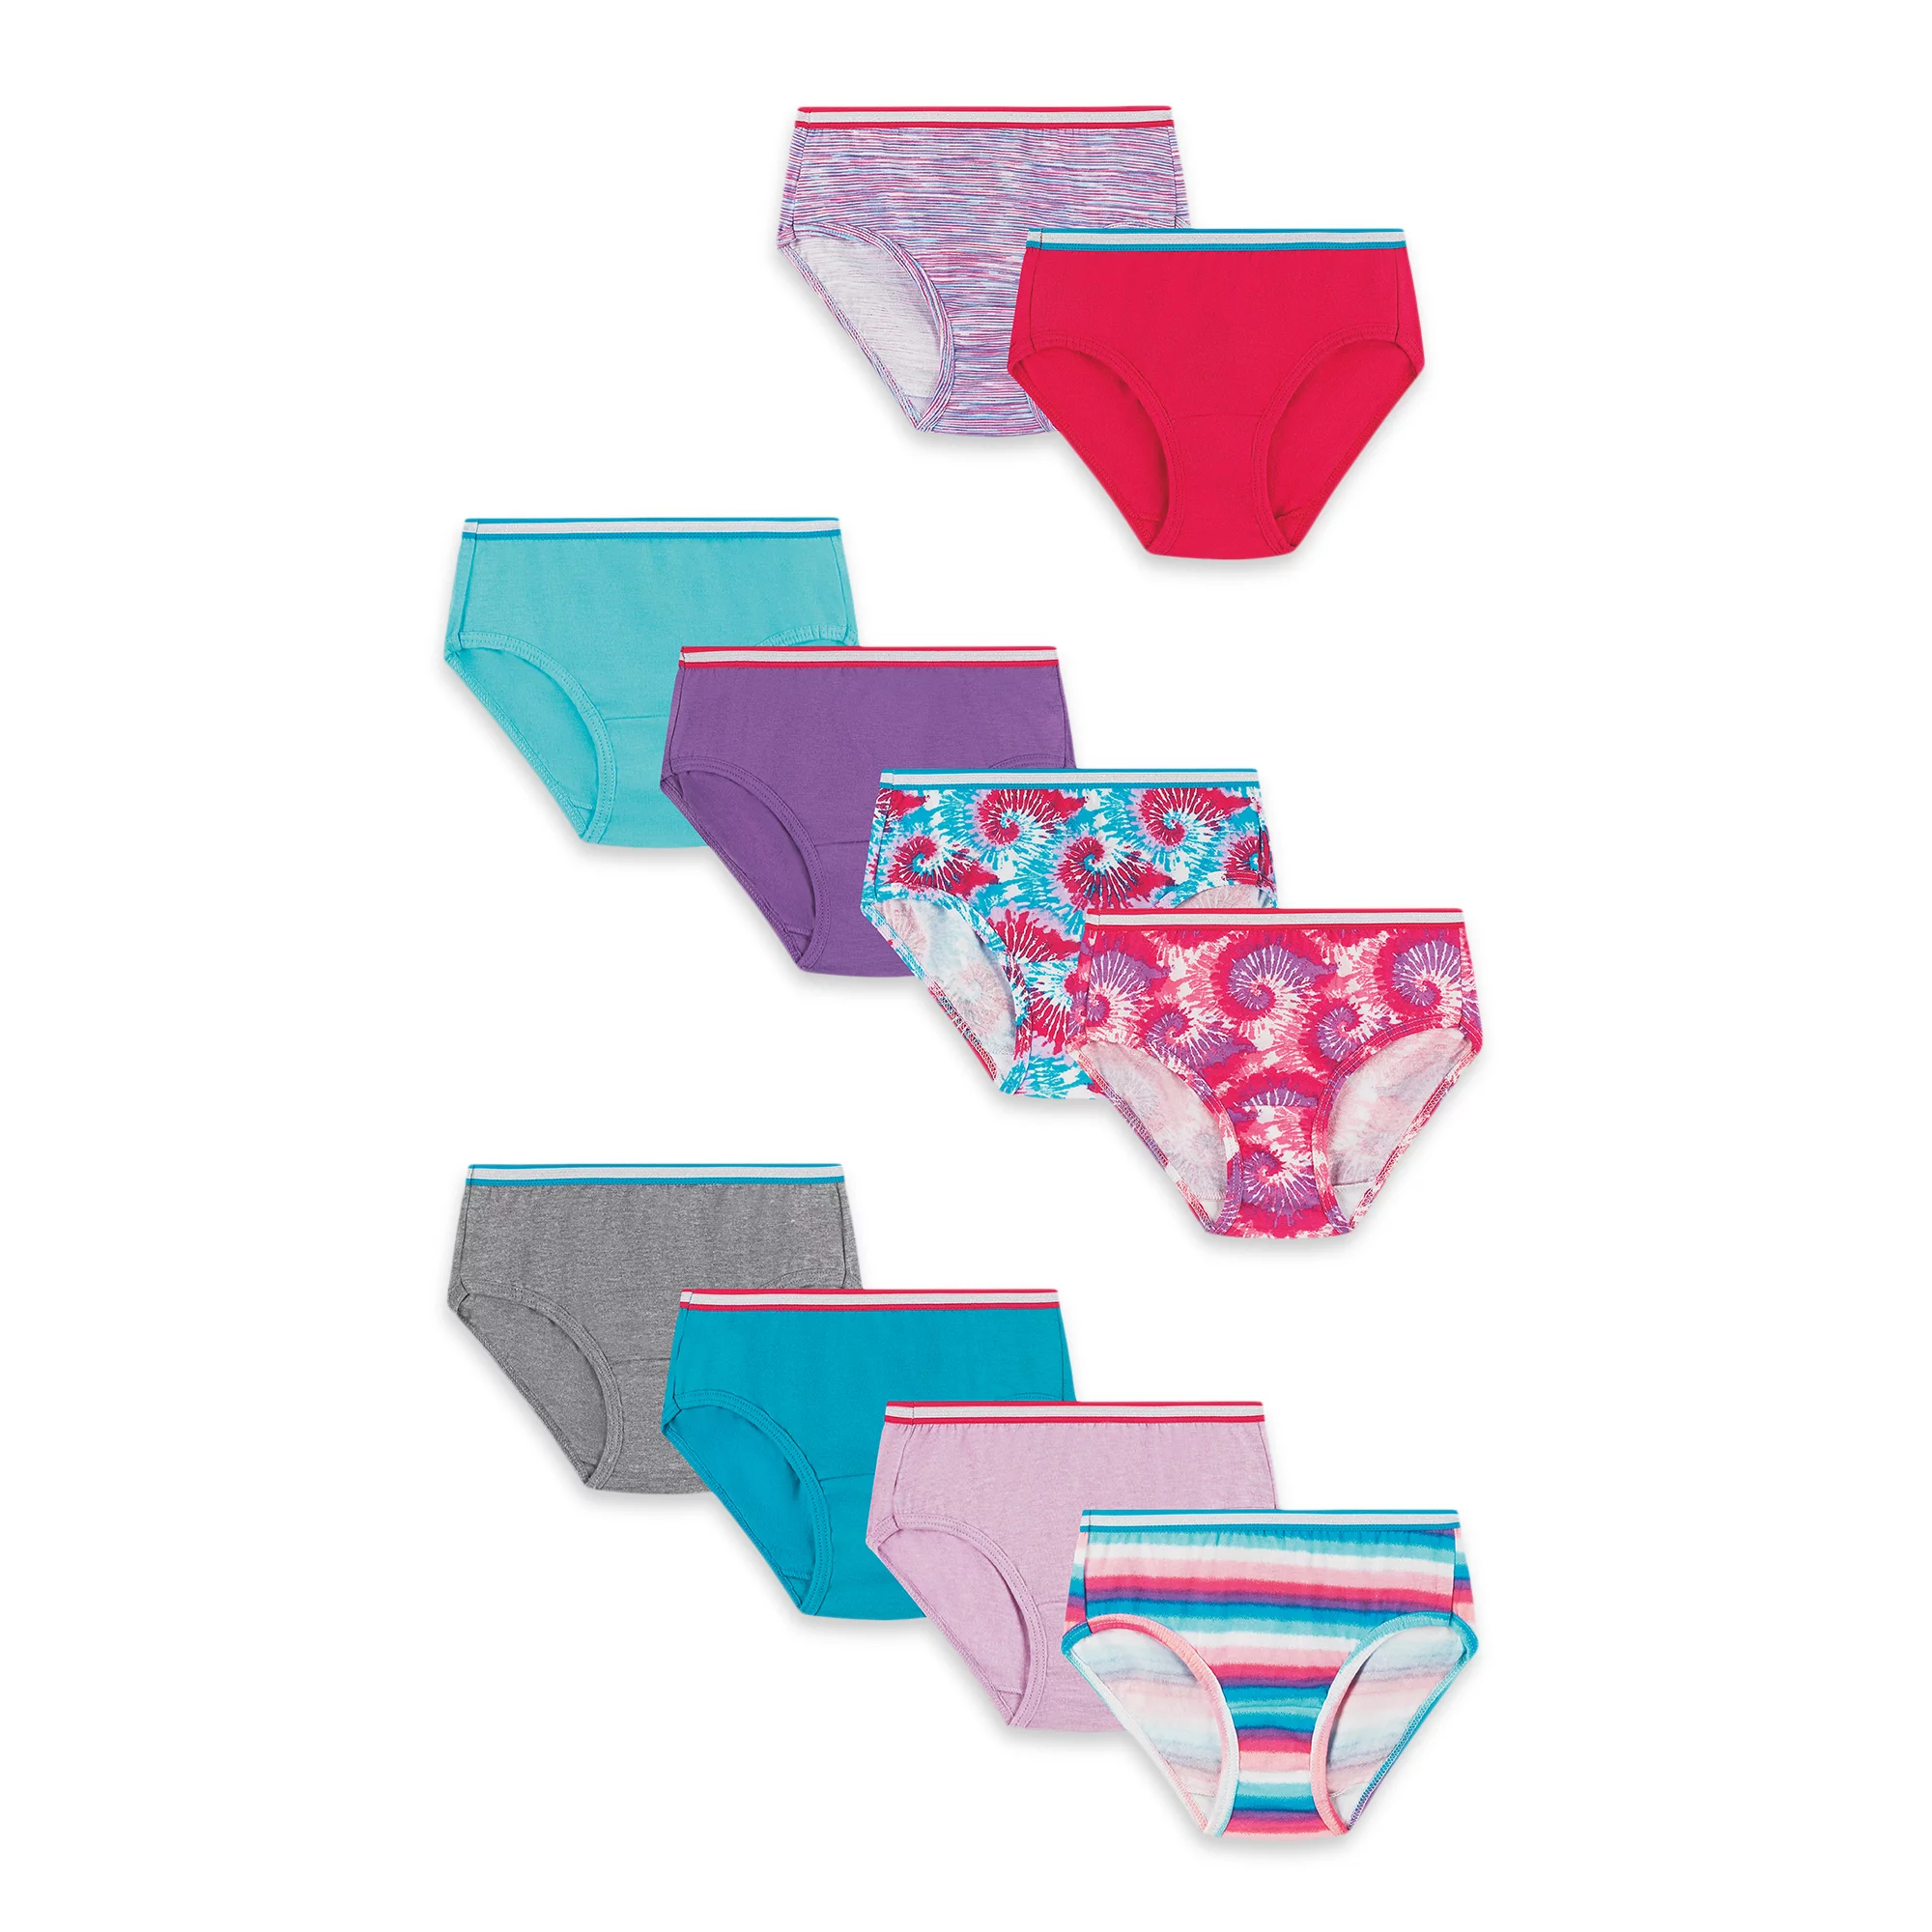 Hanes Girls' Tagless Super Soft Cotton Brief Underwear, 10 pack, Sizes 4-16  – The Market Depot